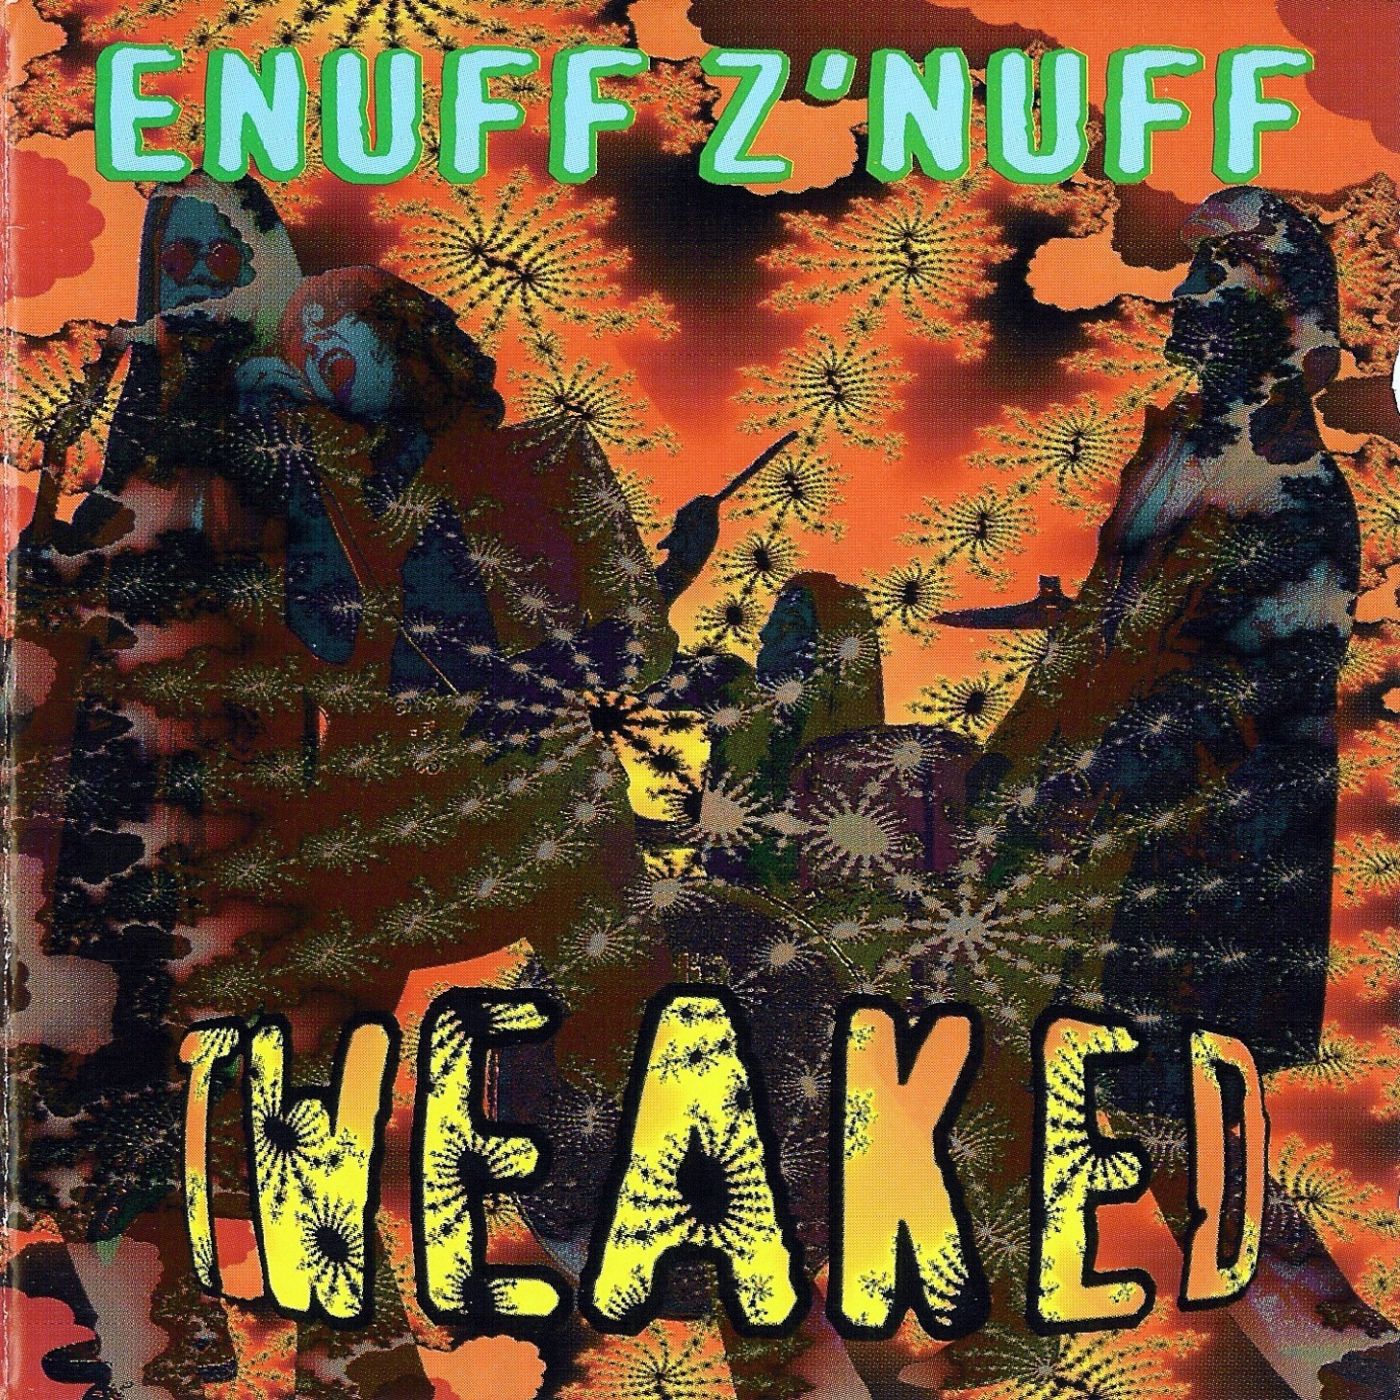 Enuff Z'Nuff - Tweaked